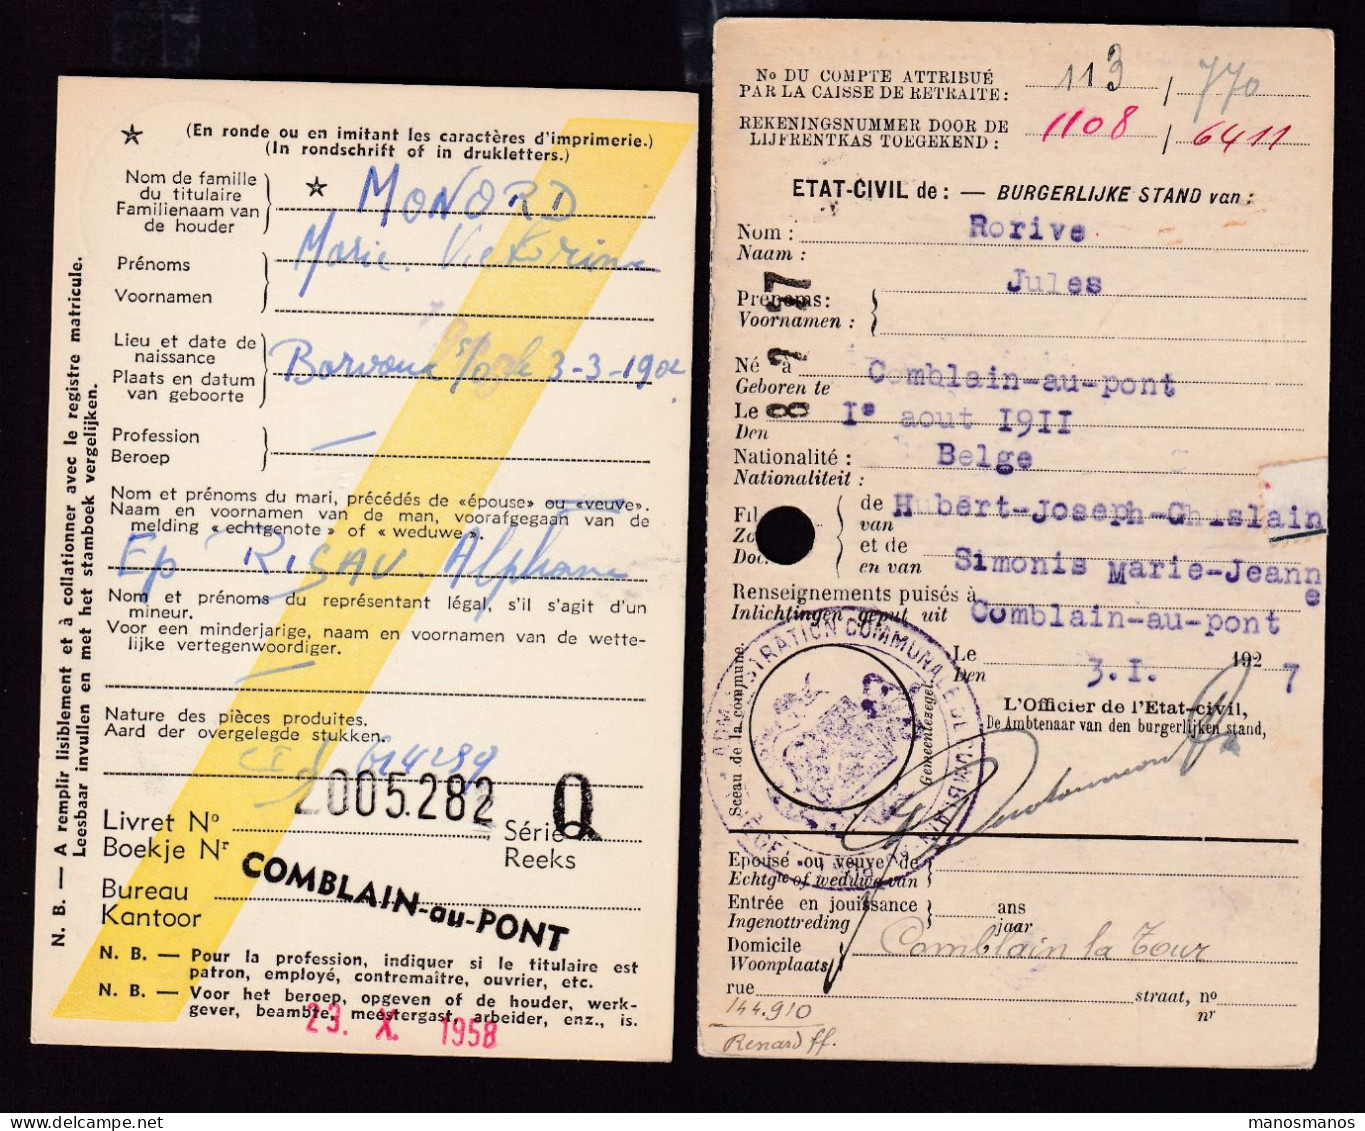 DDFF 560 -- COMBLAIN AU PONT - 2 X Carte De Caisse D'Epargne Postale/Postspaarkaskaart 1927/1958 - 1 X Admin. Communale - Franchise